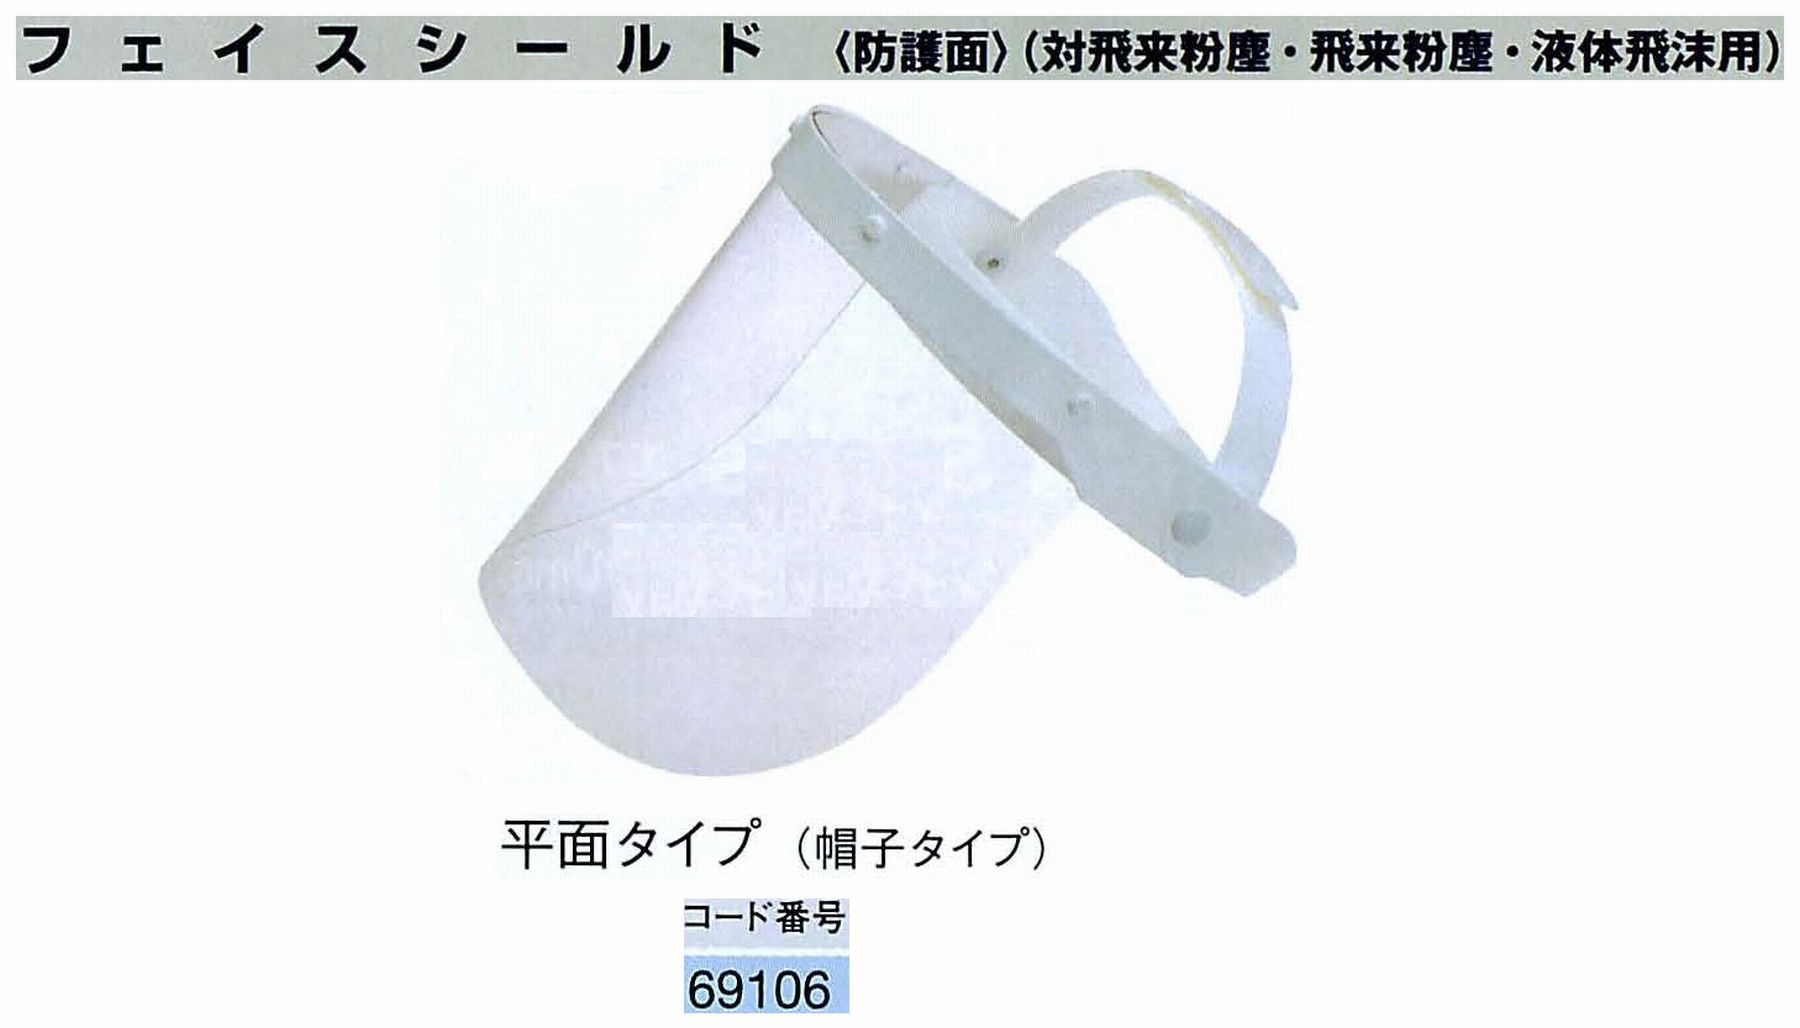 ナカニシ/NAKANISHI 防護用品 フェイスシールド 平面タイプ(帽子タイプ) 69106